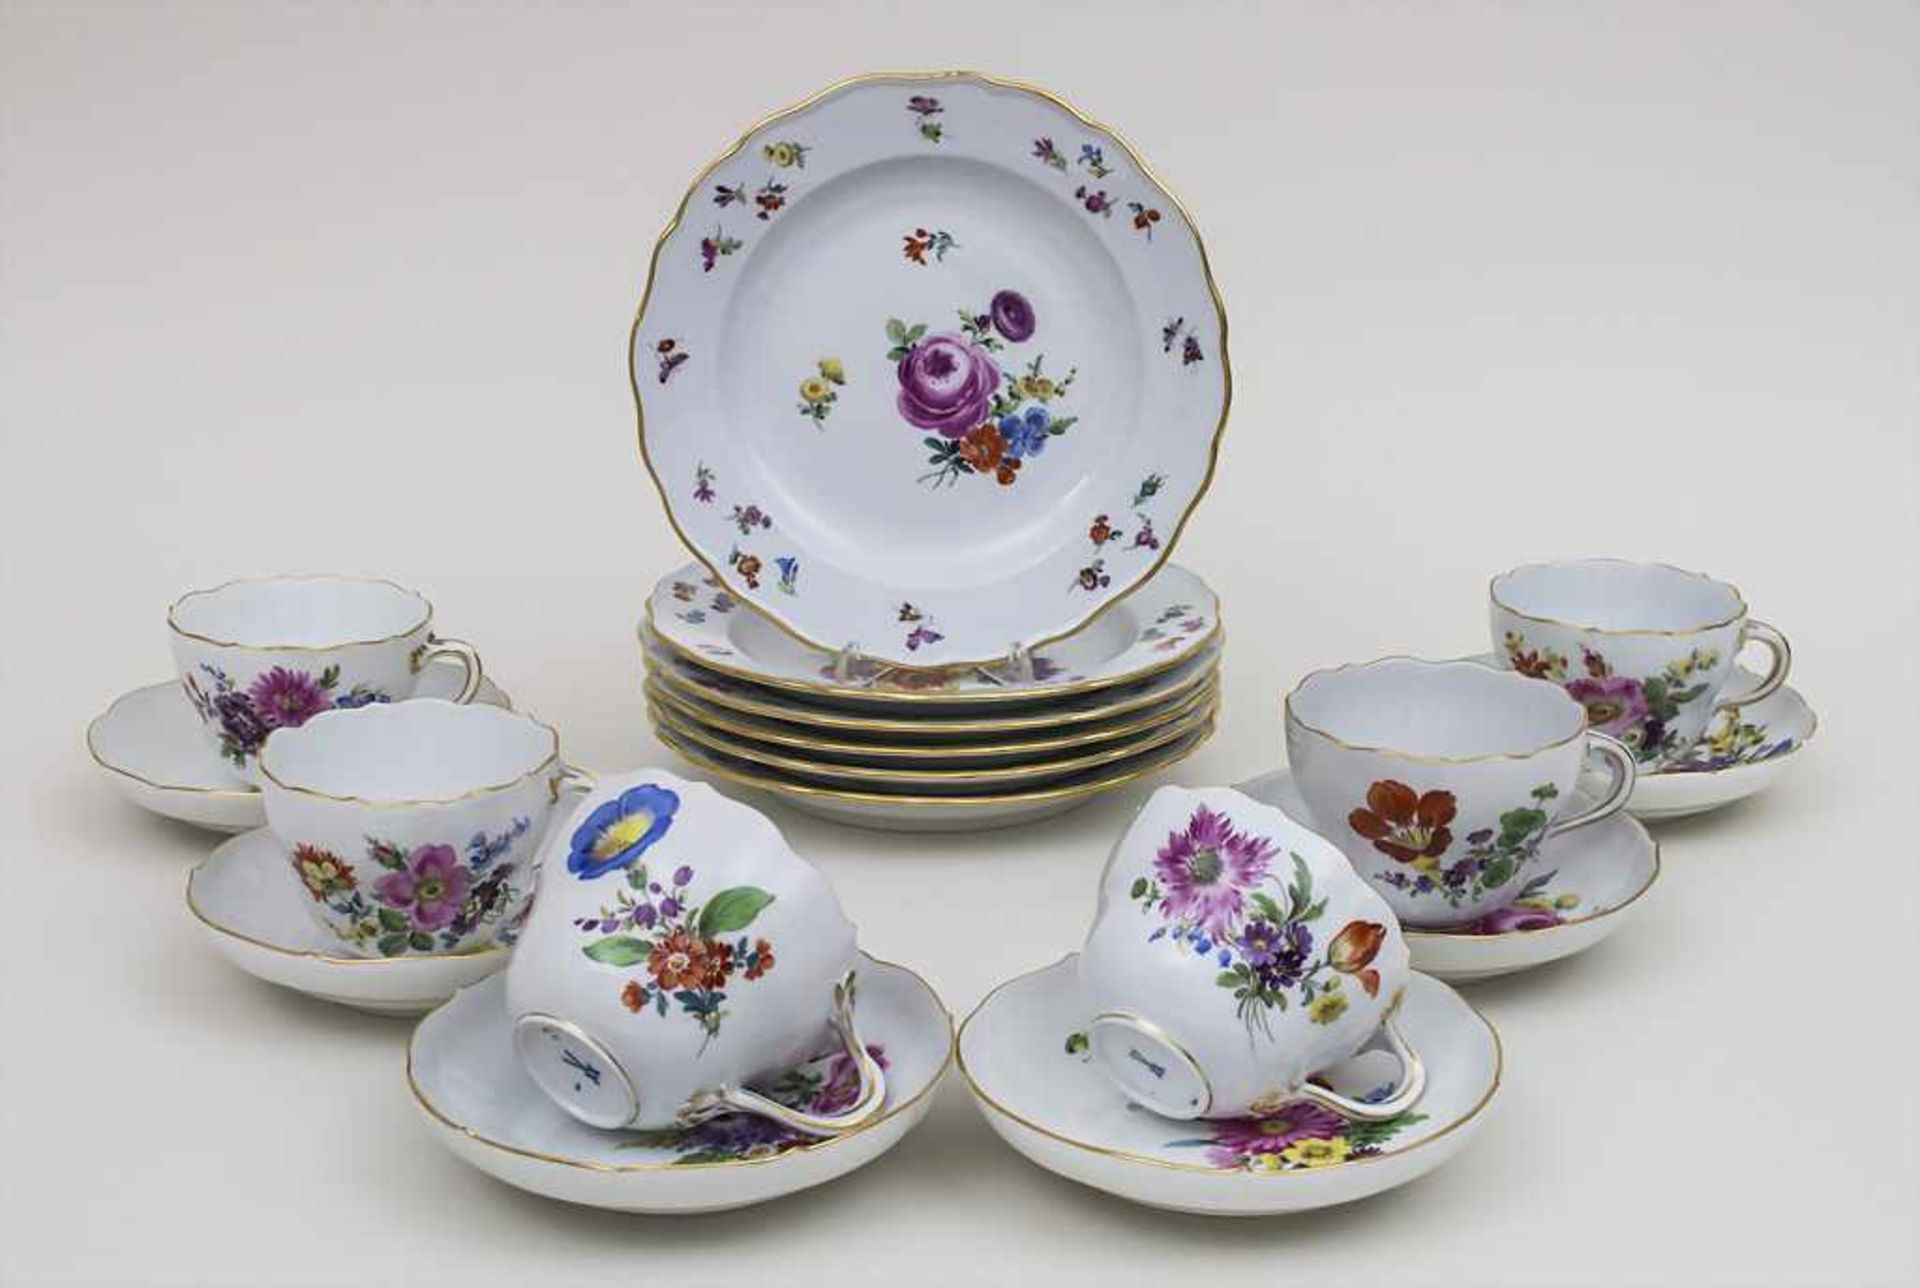 6 Gedecke mit Blumen und Insekten / 6 cups, 6 saucers, 6 plates with flowers and insects, Meissen,